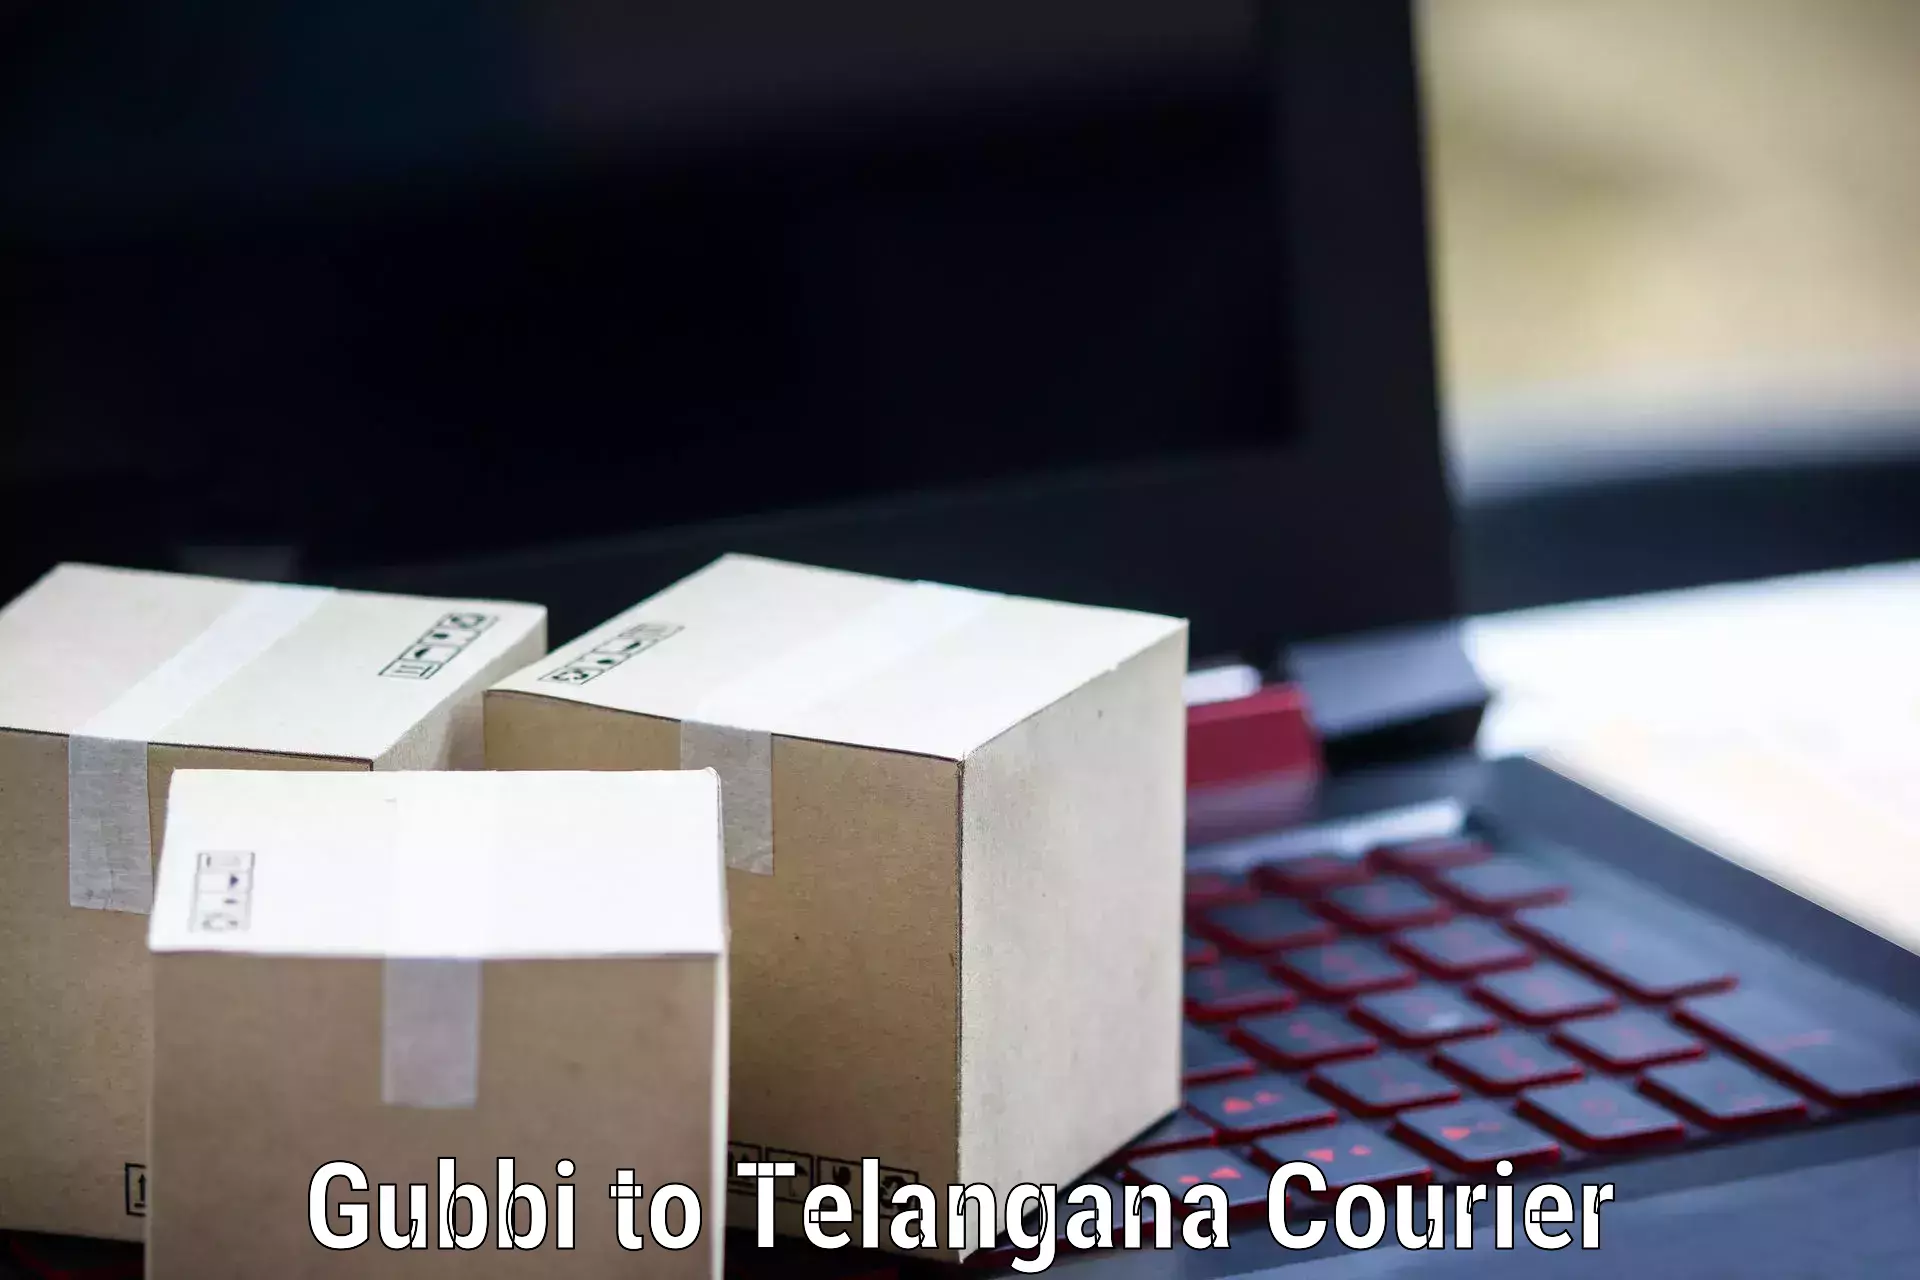 Courier service efficiency Gubbi to Veenavanka